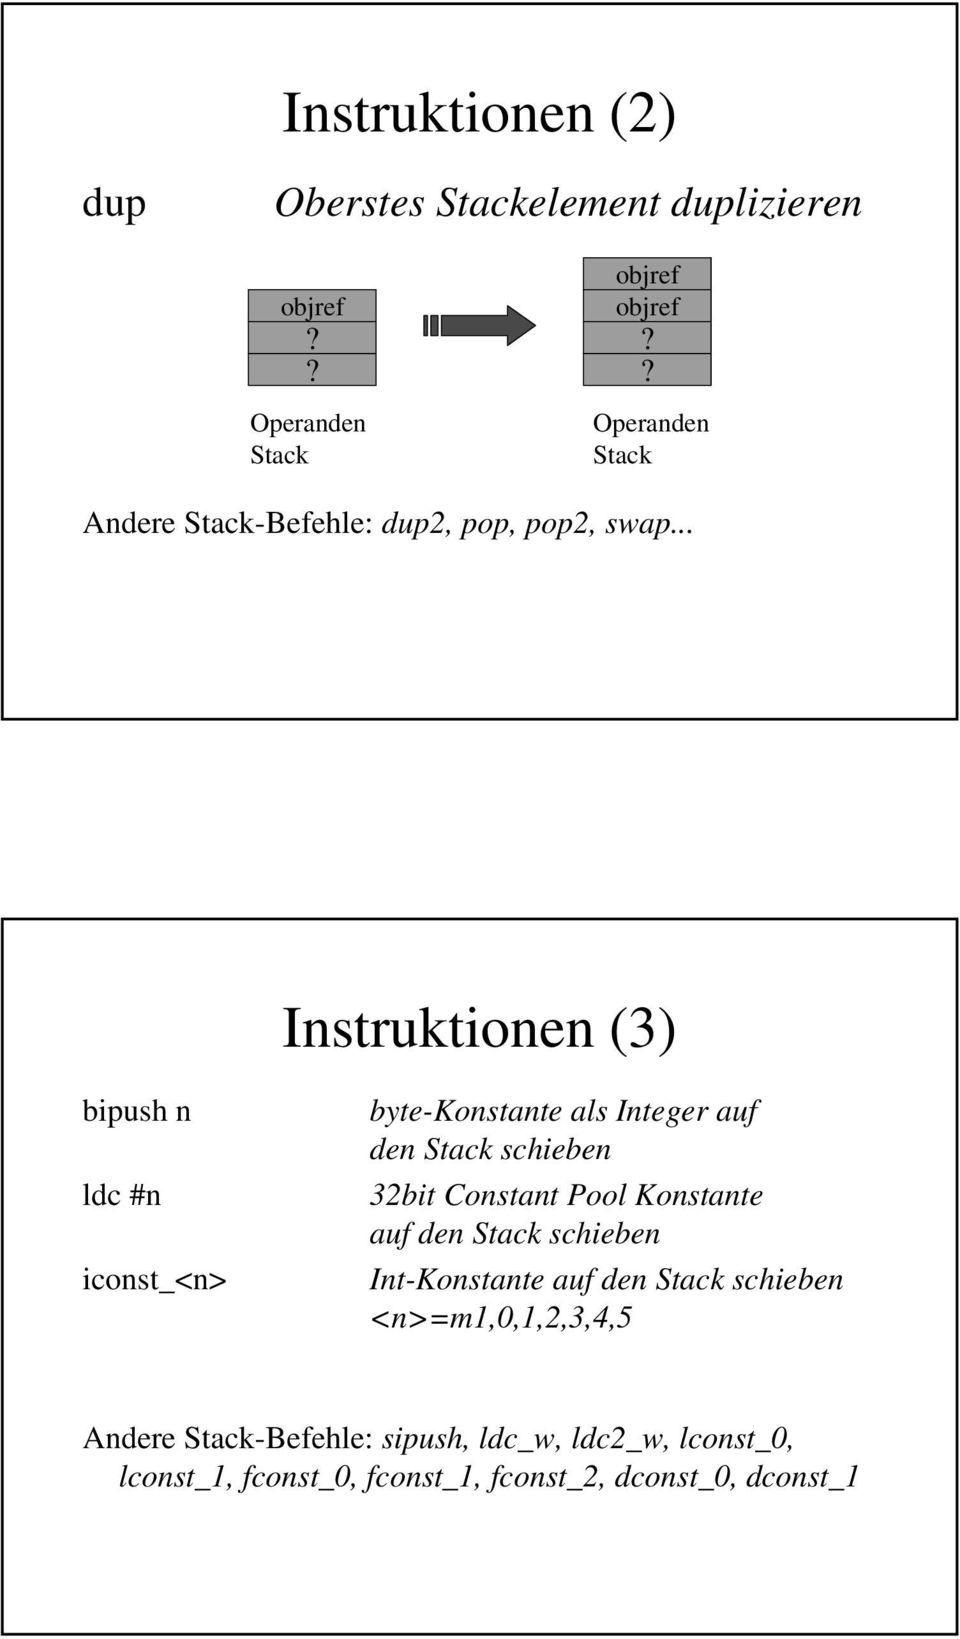 .. Instruktionen (3) bipush n ldc #n iconst_<n> byte-konstante als Integer auf den Stack schieben 3bit Constant Pool